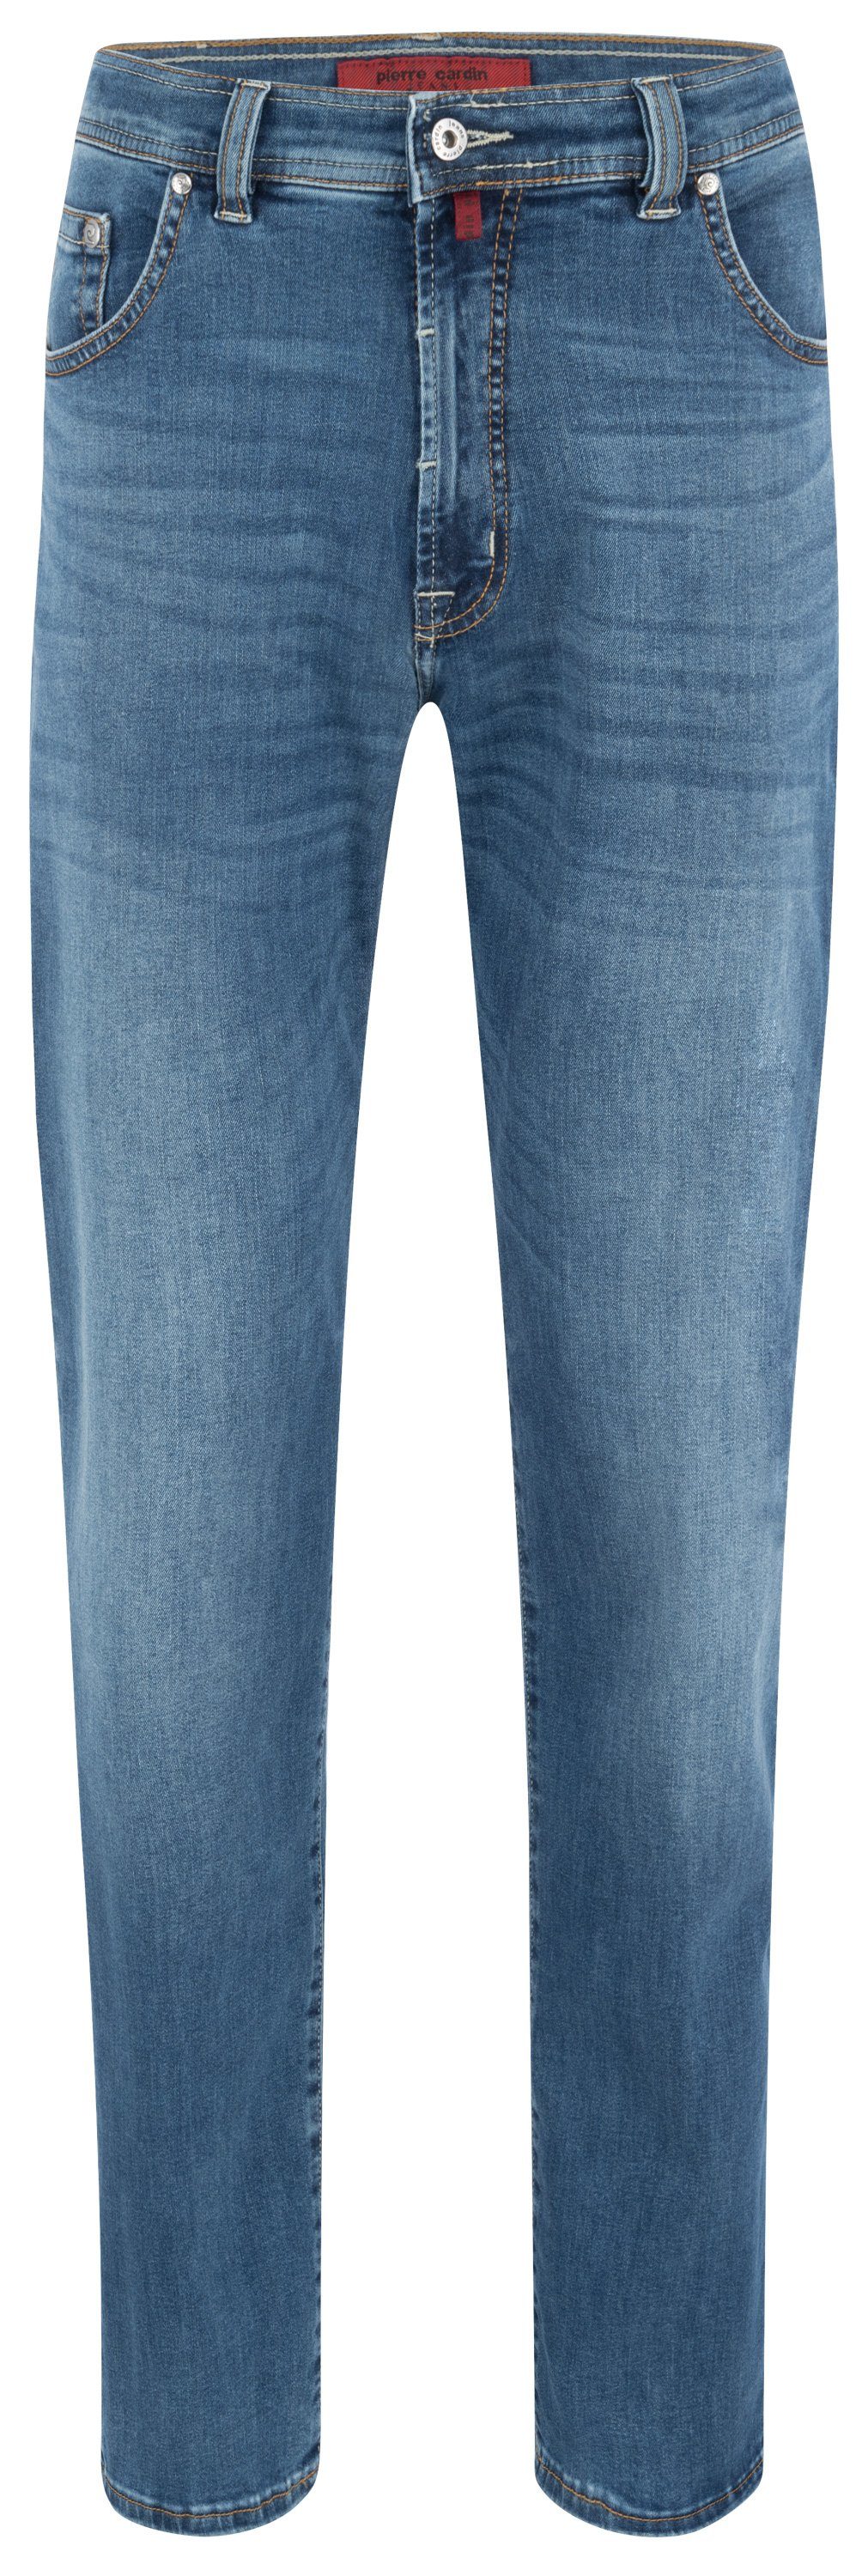 Pierre Cardin 5-Pocket-Jeans PIERRE CARDIN DIJON blue used 32310 7004.6822